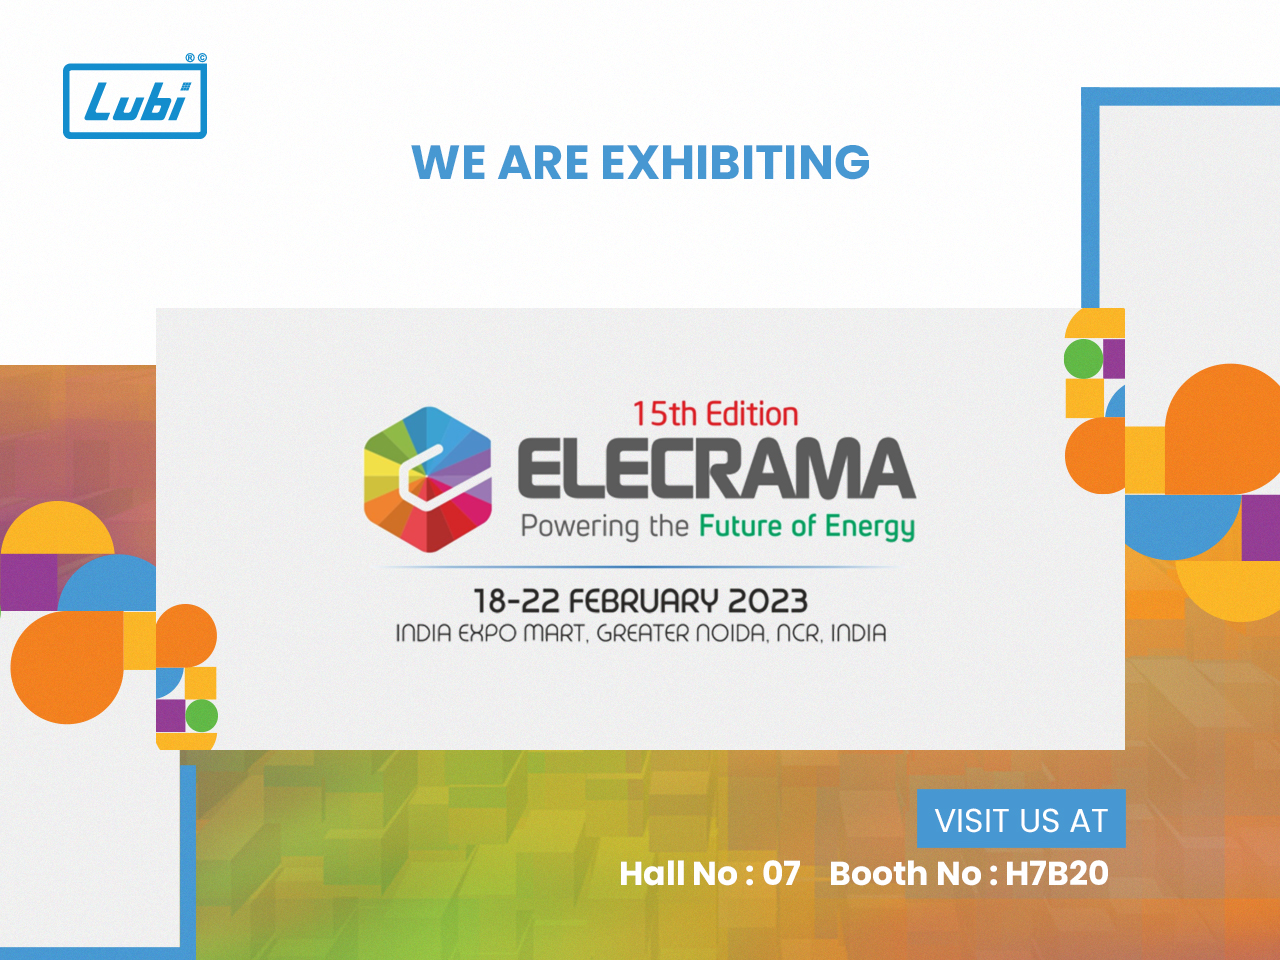 Elecrama-2023 exhibition